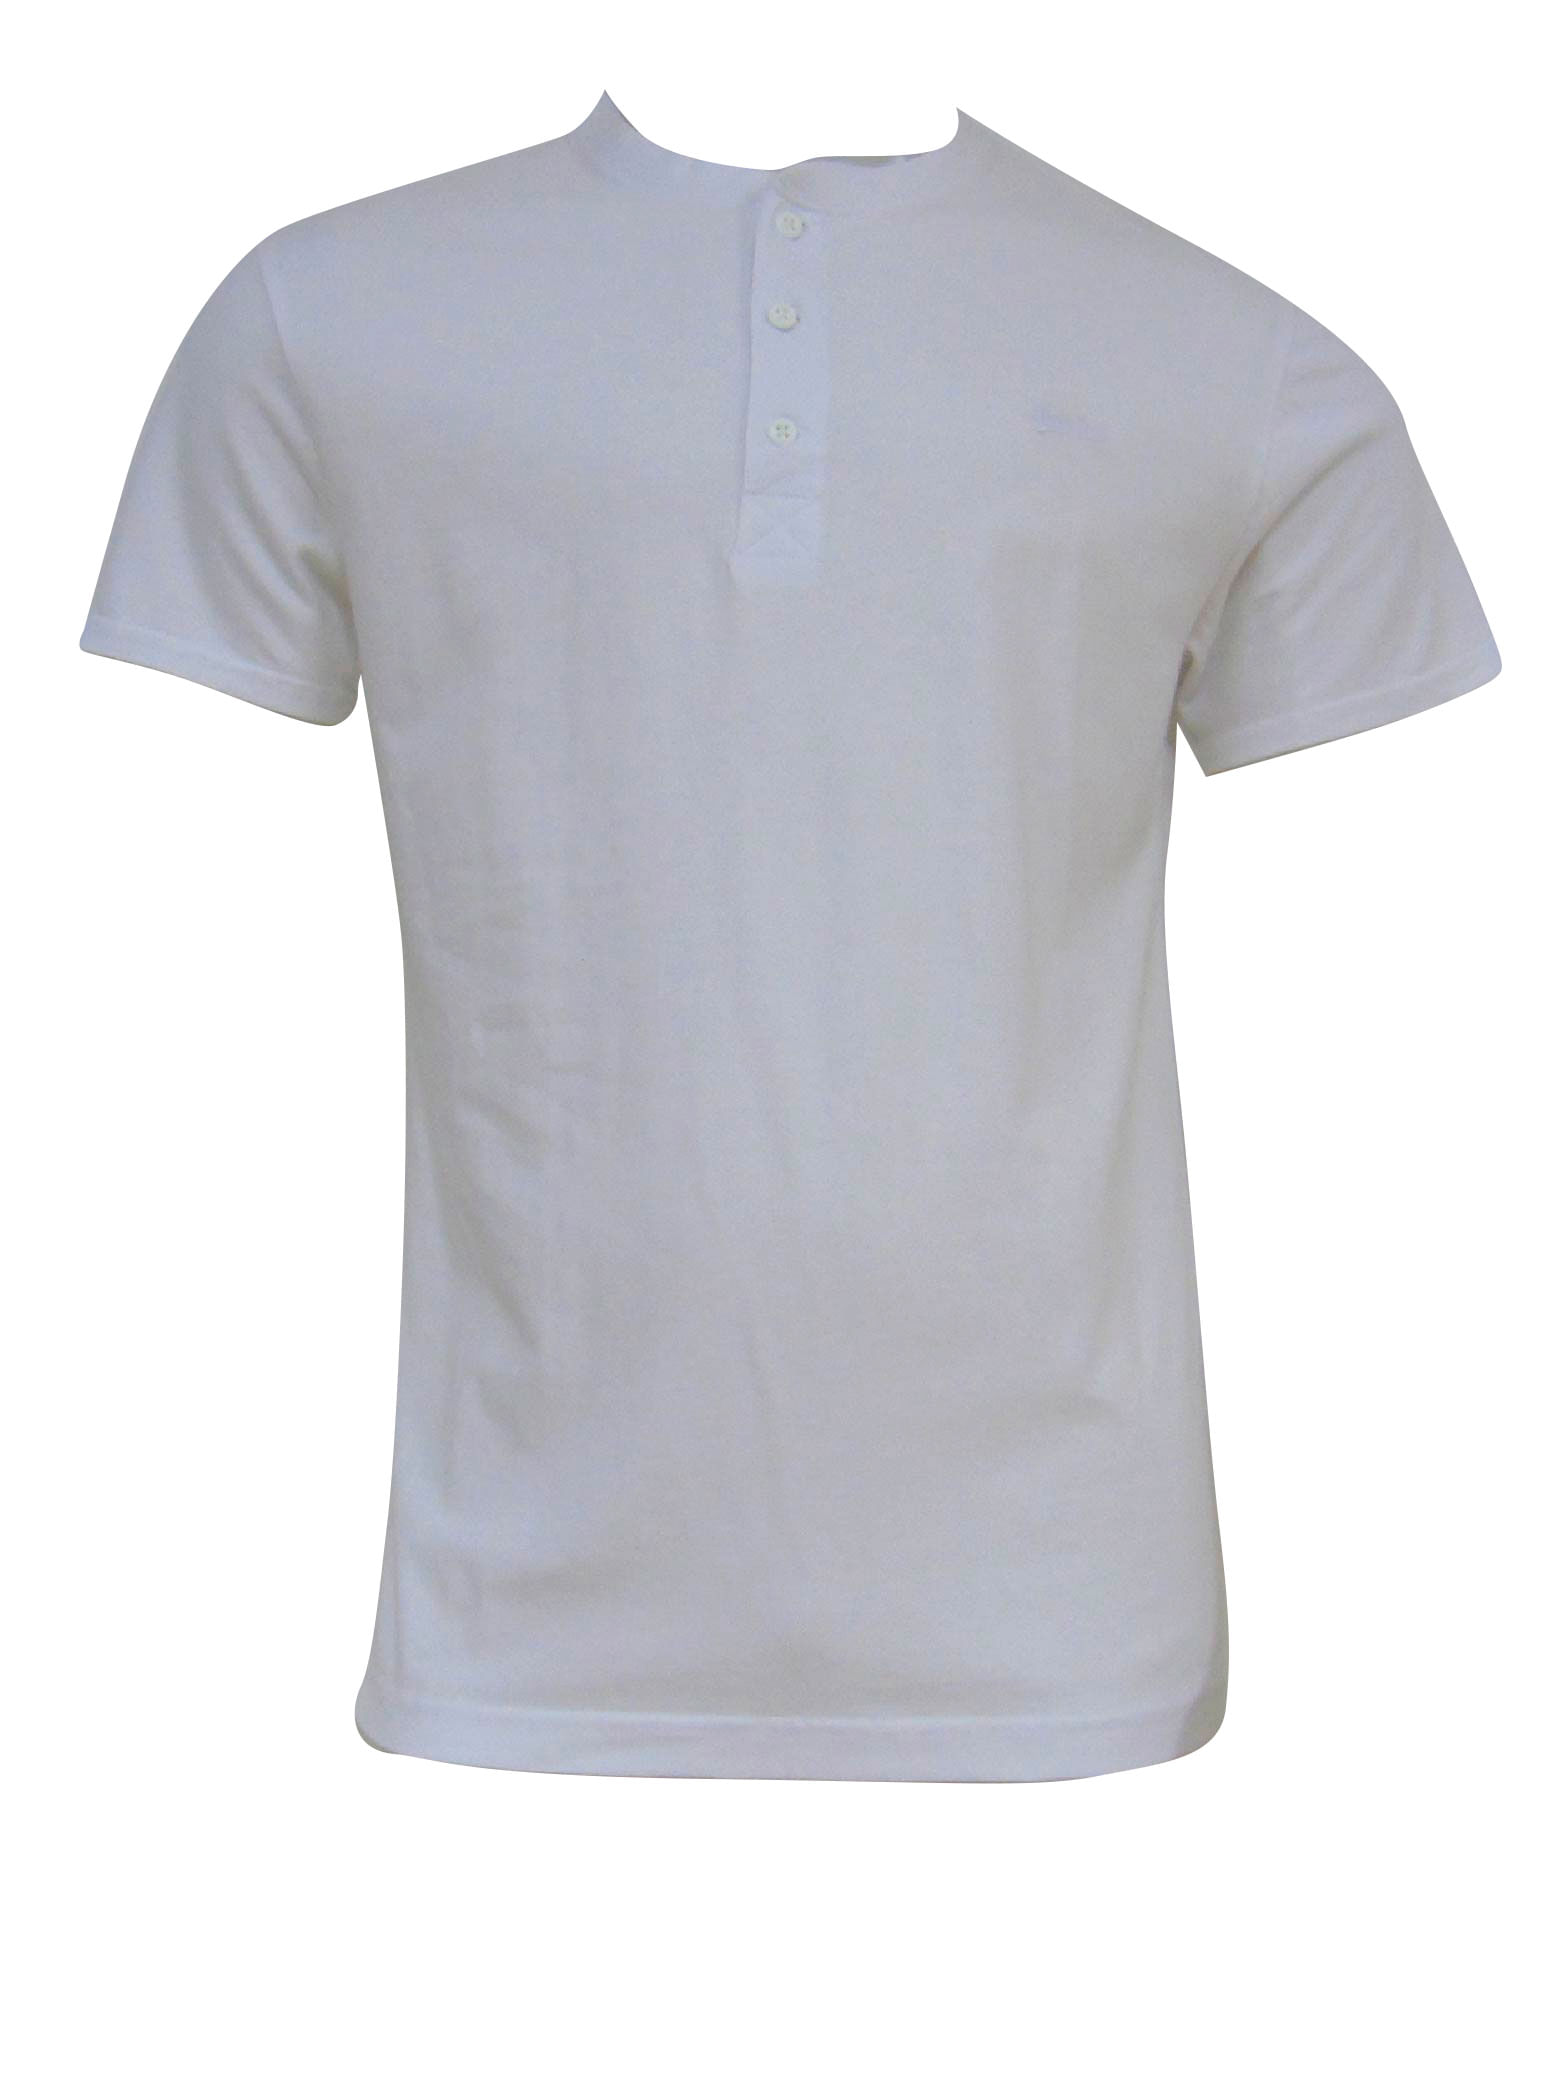 Camiseta Superdry Merch blanca para hombre -a